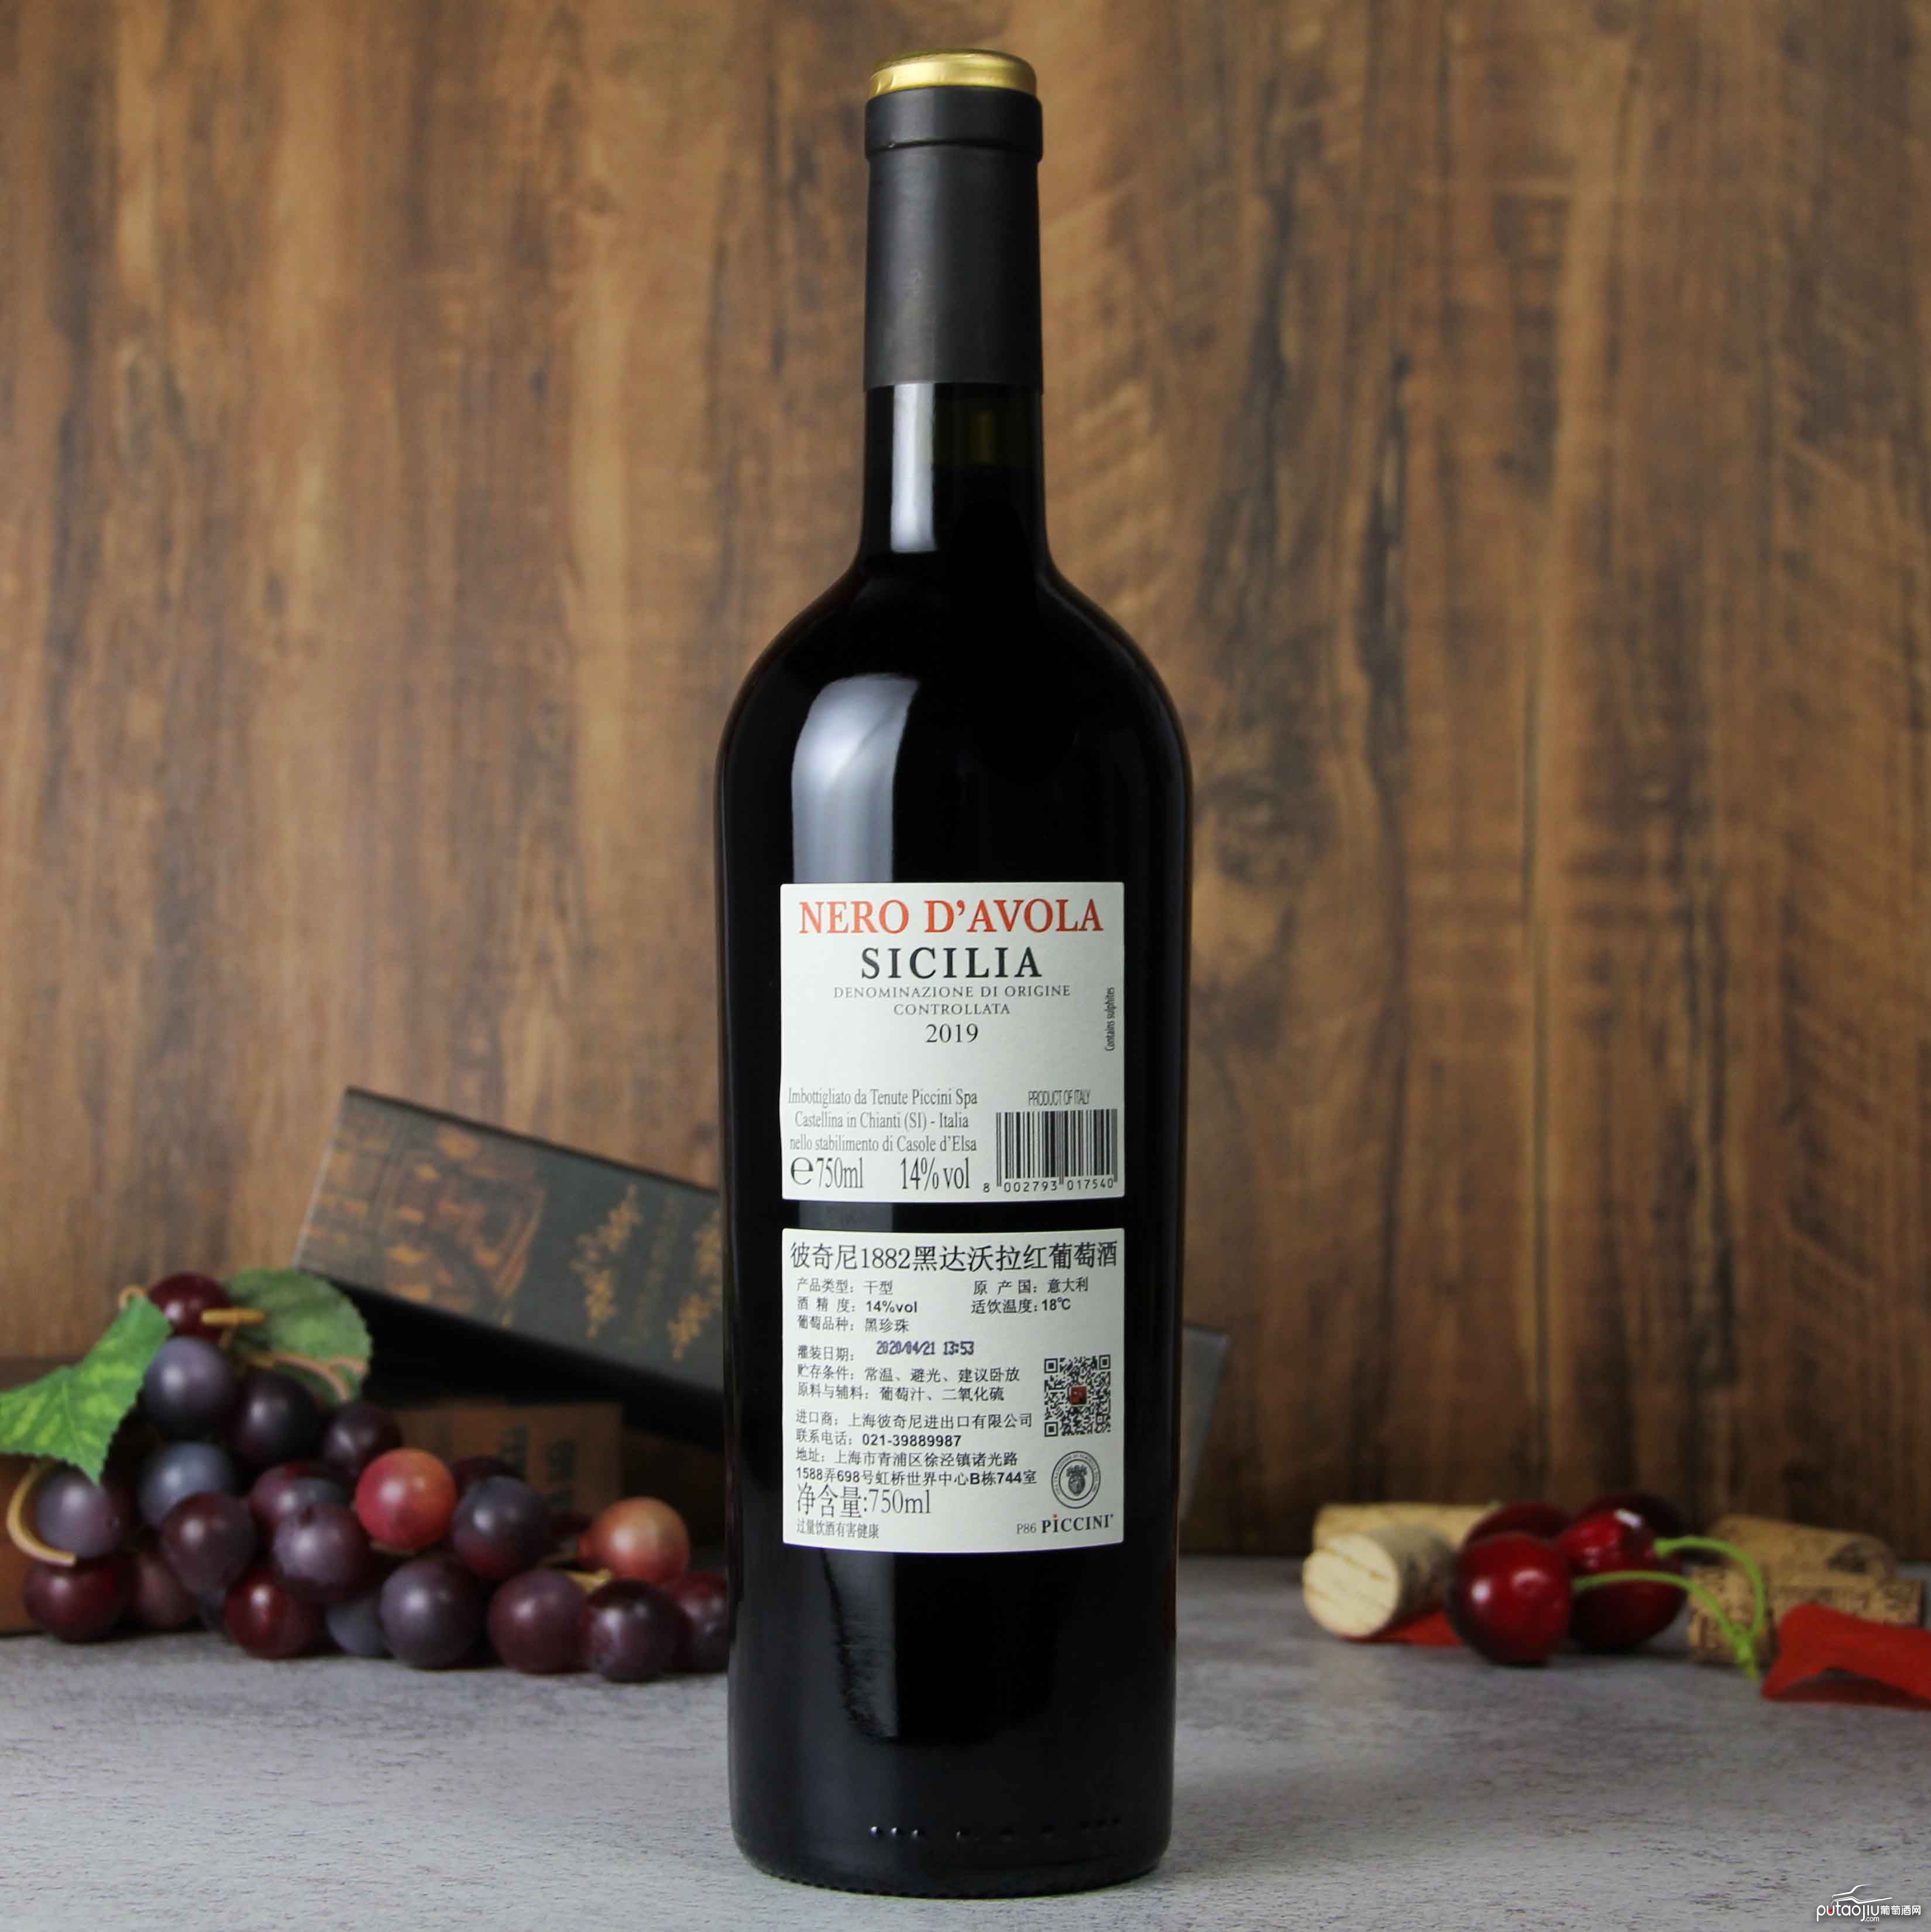 意大利彼奇尼1882黑达沃拉红葡萄酒红酒